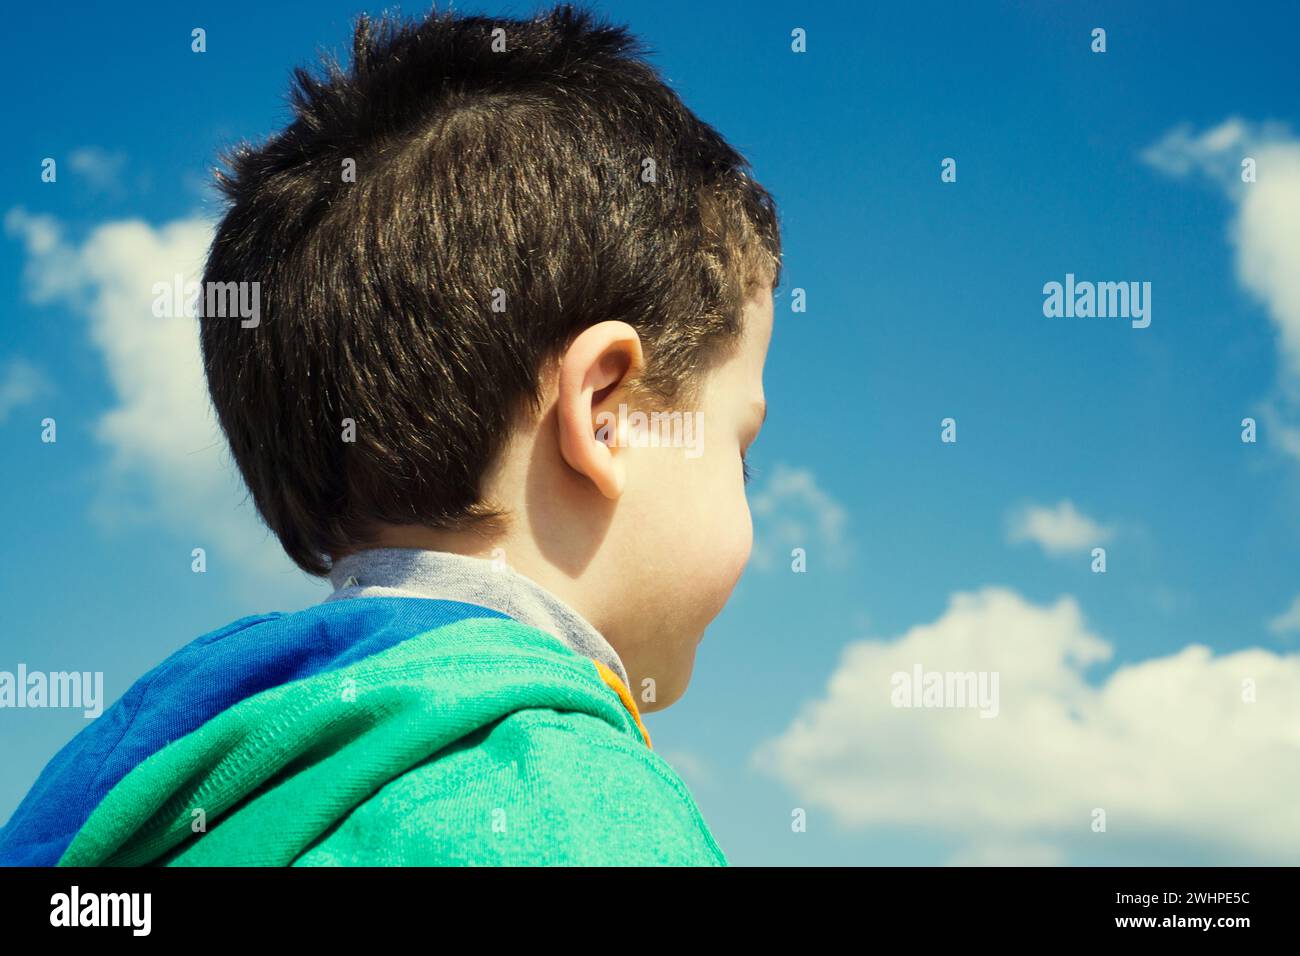 Vista posteriore della testa del bambino contro il cielo blu Foto Stock